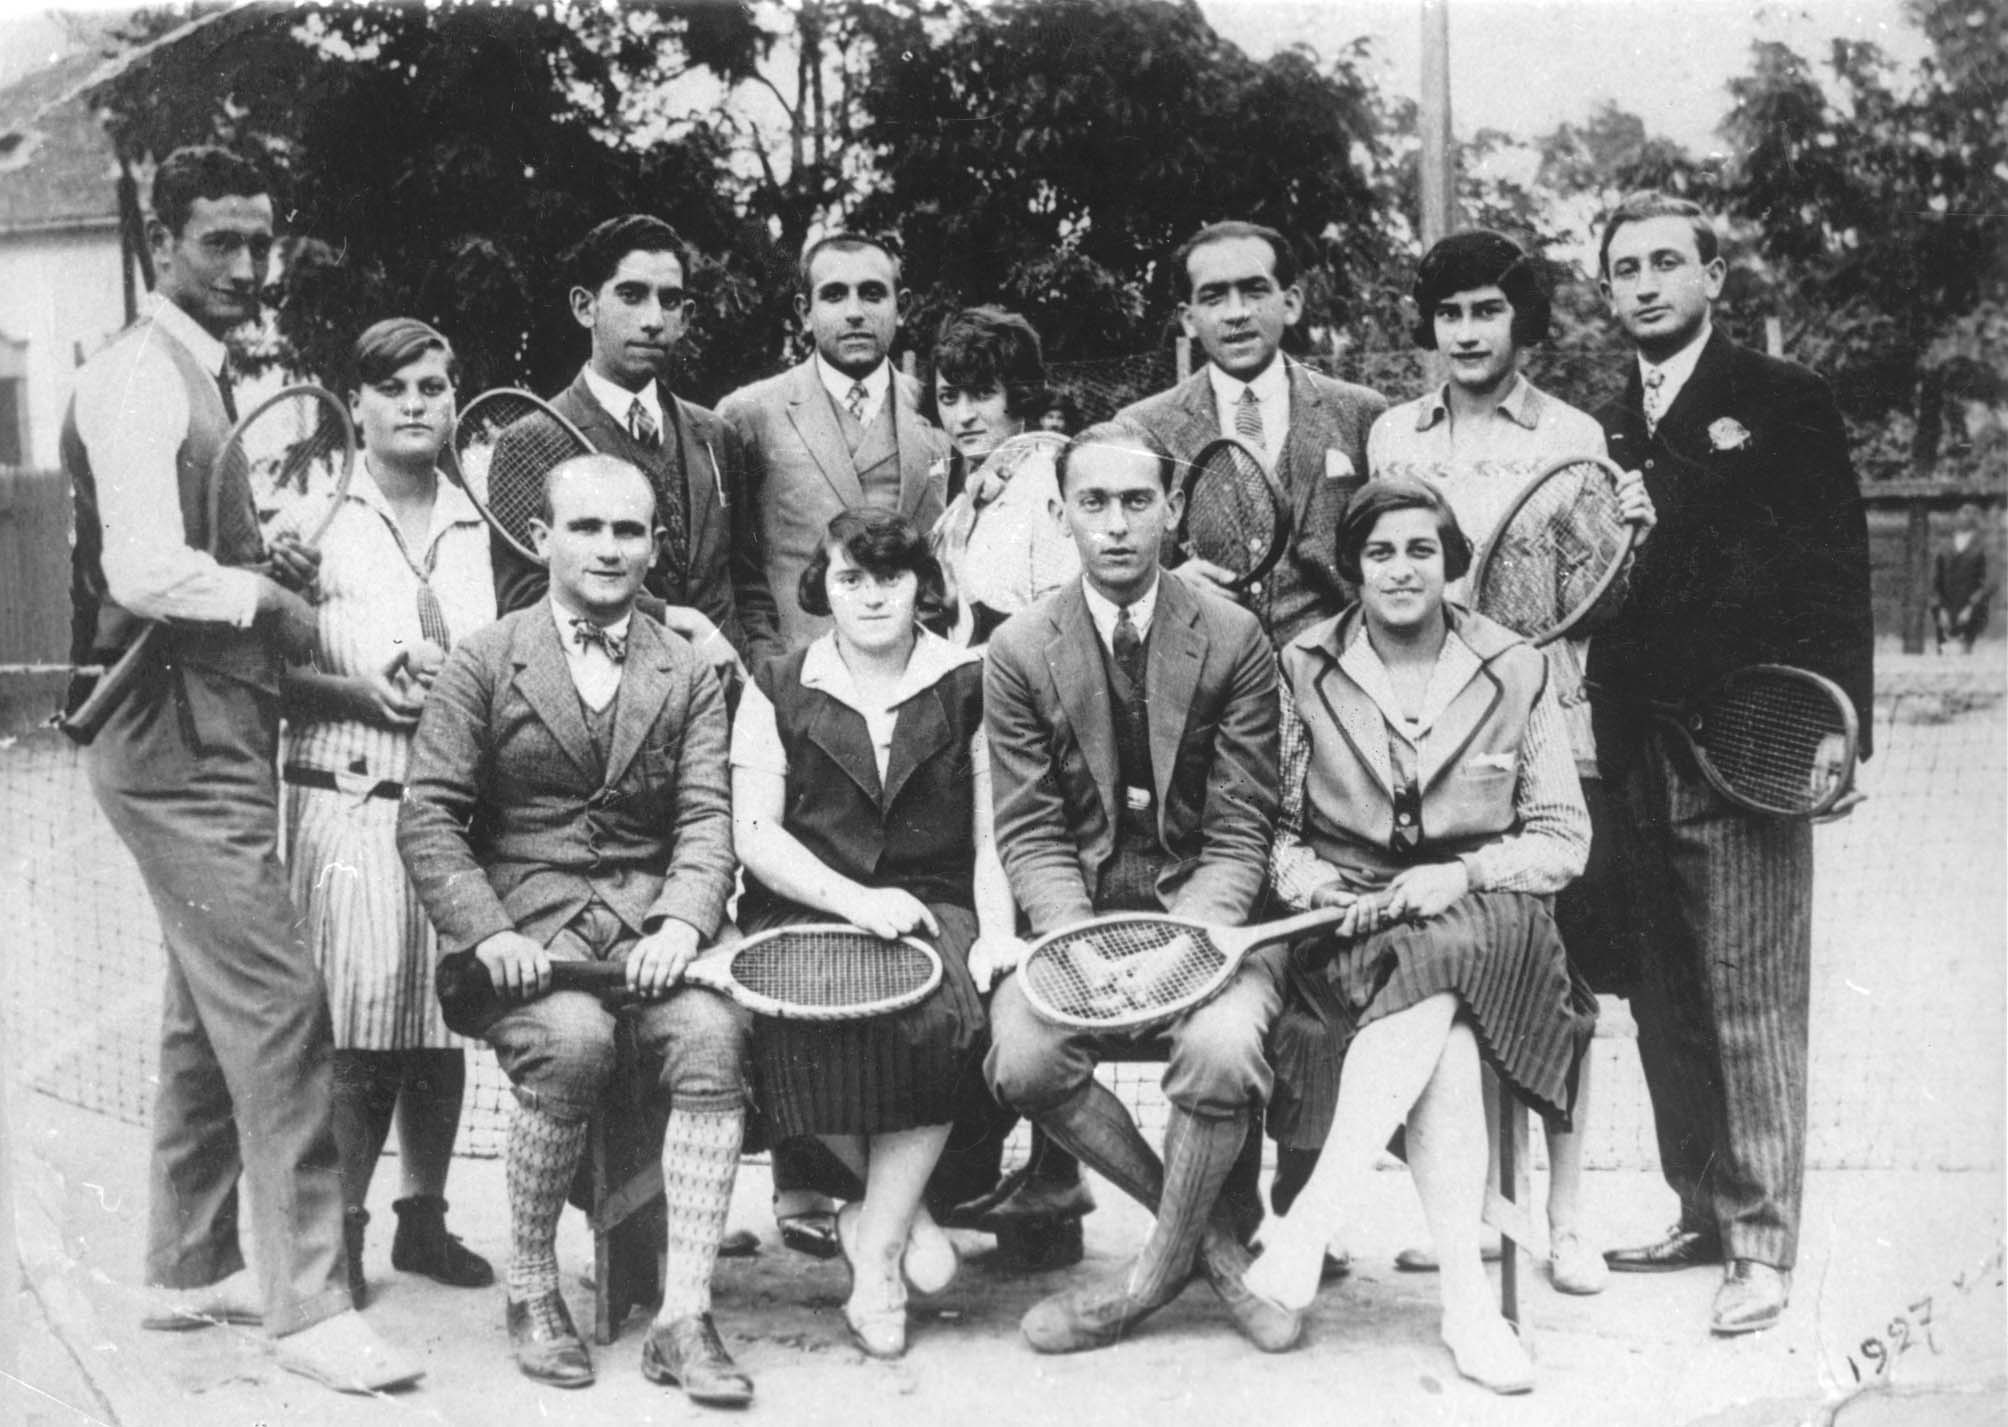 Members of a tennis team. Kaba, Hungary, 1927